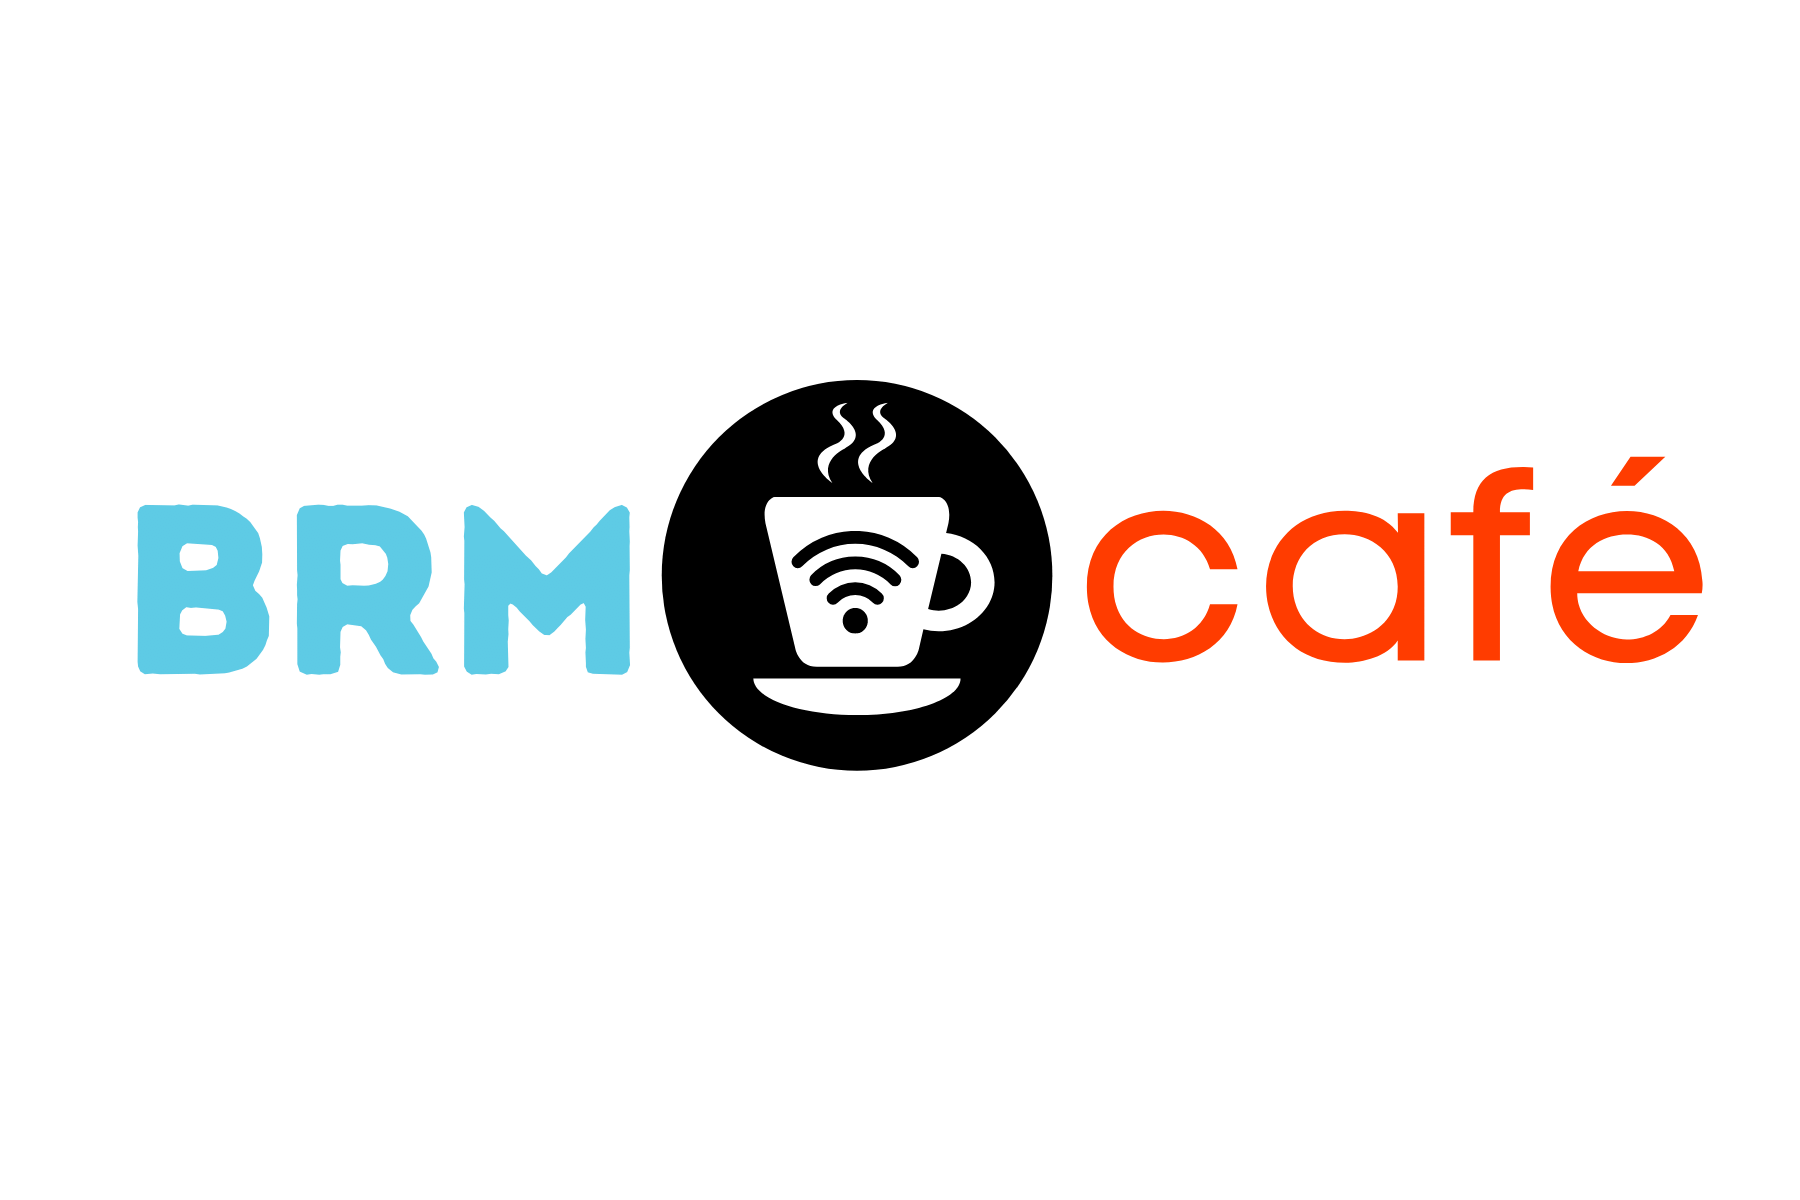 BRM Cafe Blog